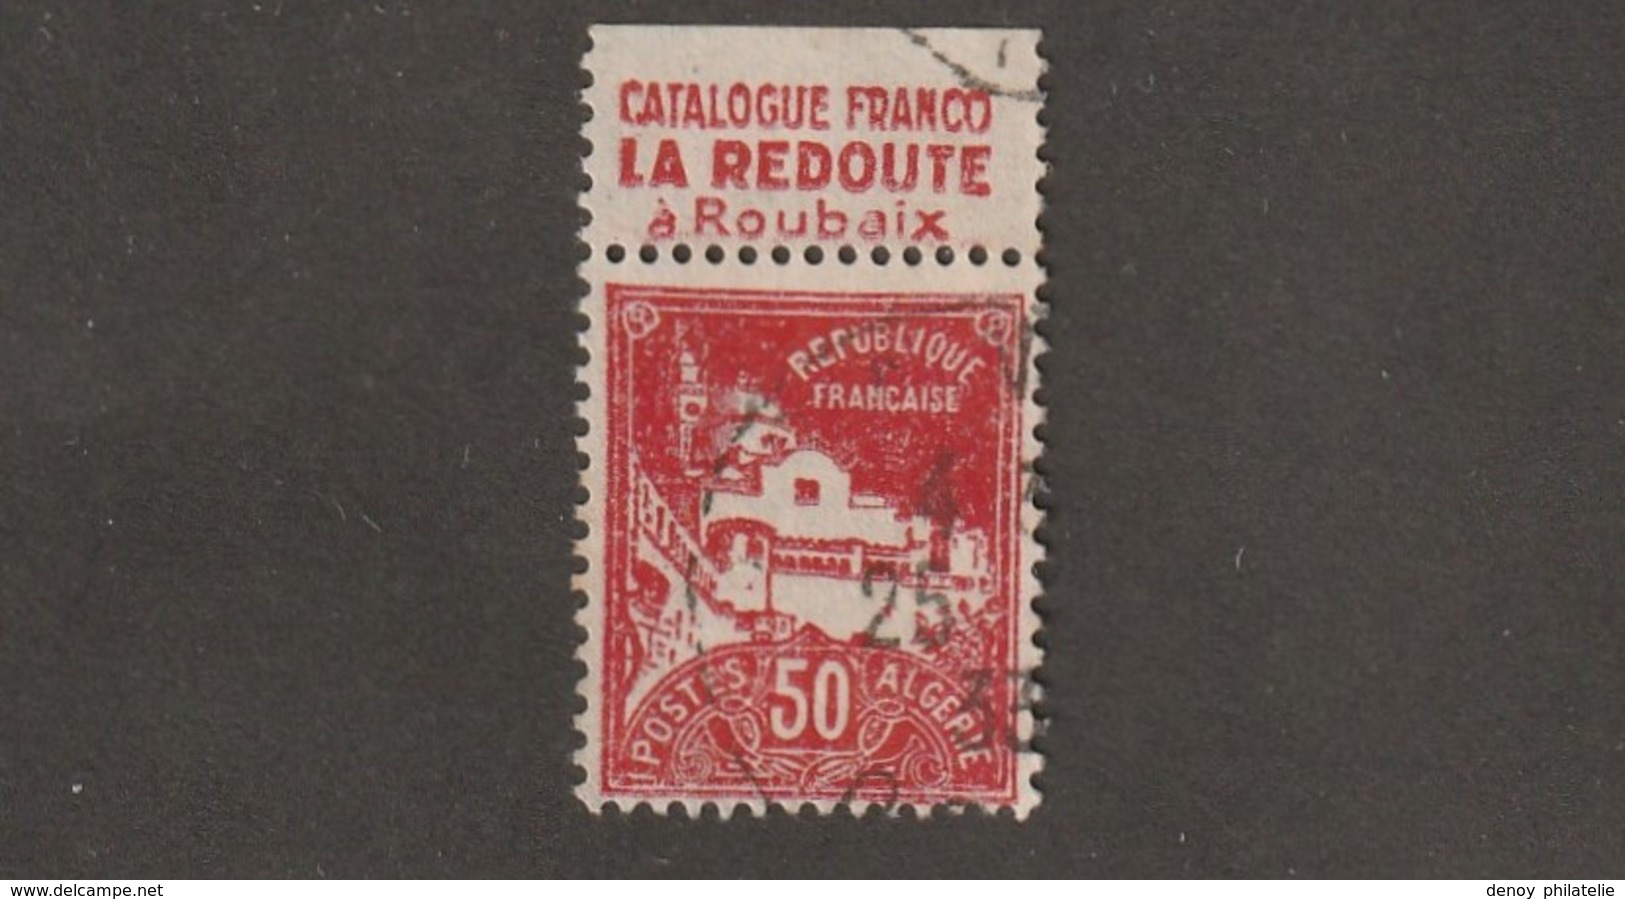 Algérie Timbre N° 79 A Avec Bande Publicitaire La Redoute - Usados